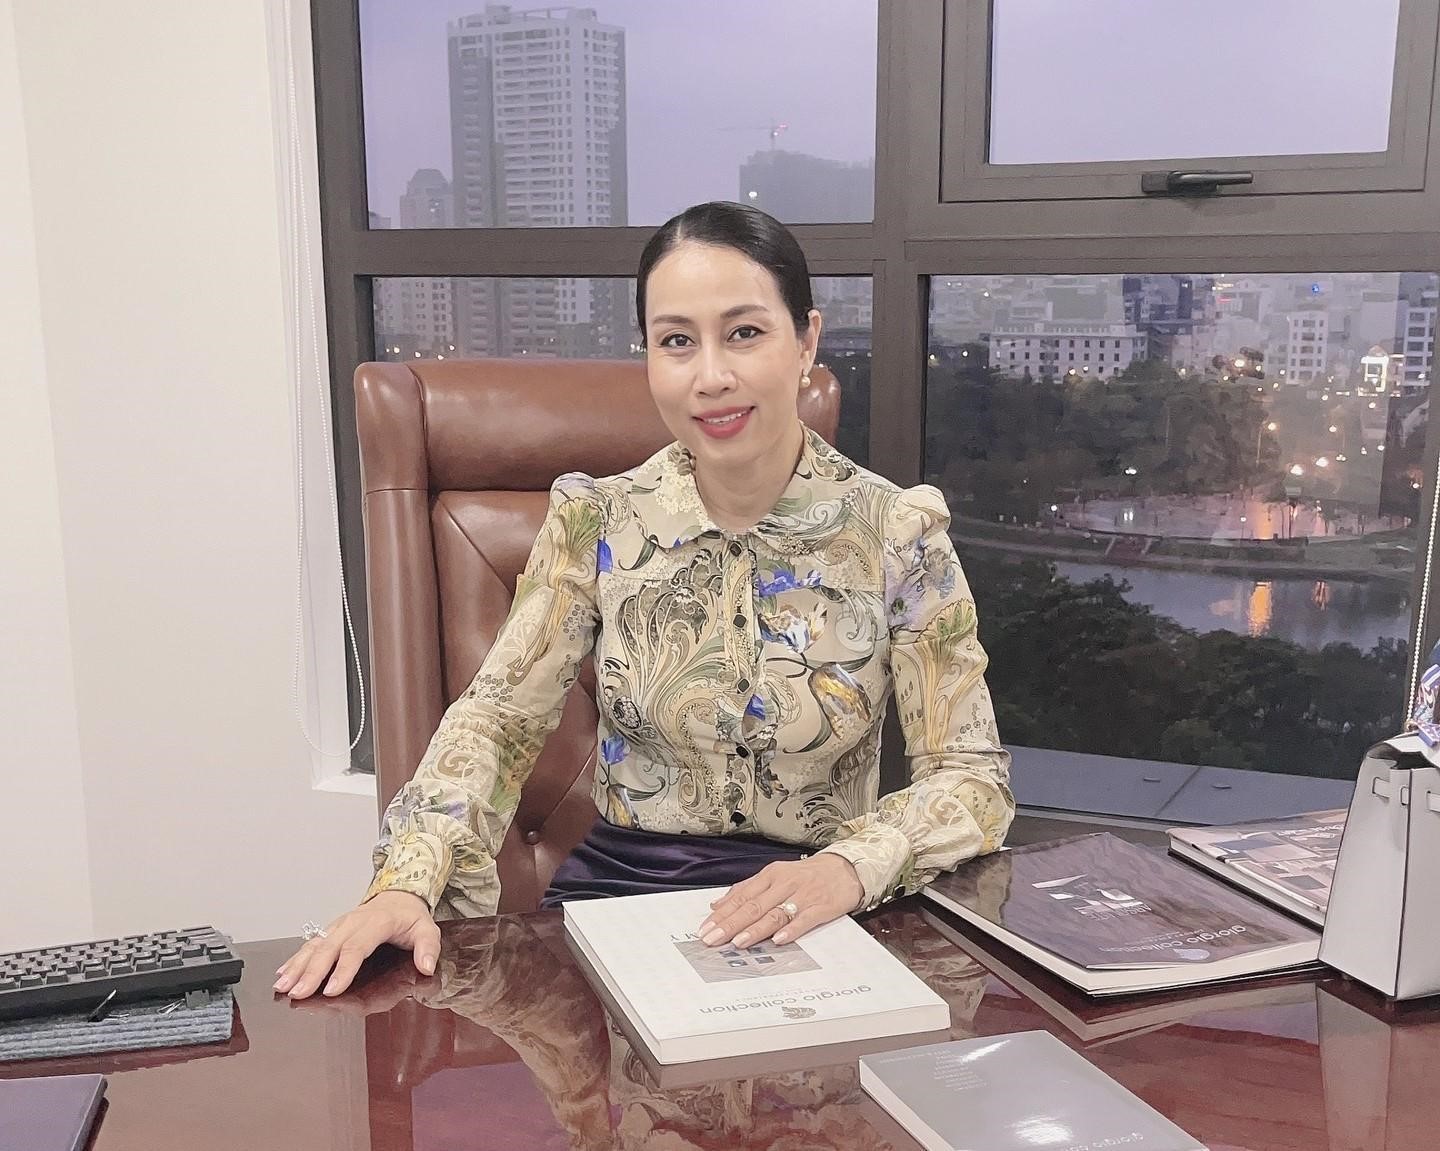  Chị Thina Nguyen hiện giữ chức Chủ tịch HĐQT của Công ty Cổ phần Phan Nguyễn, một công ty đầu tư và xây dựng dự án bất động sản tại Hà Nội. 